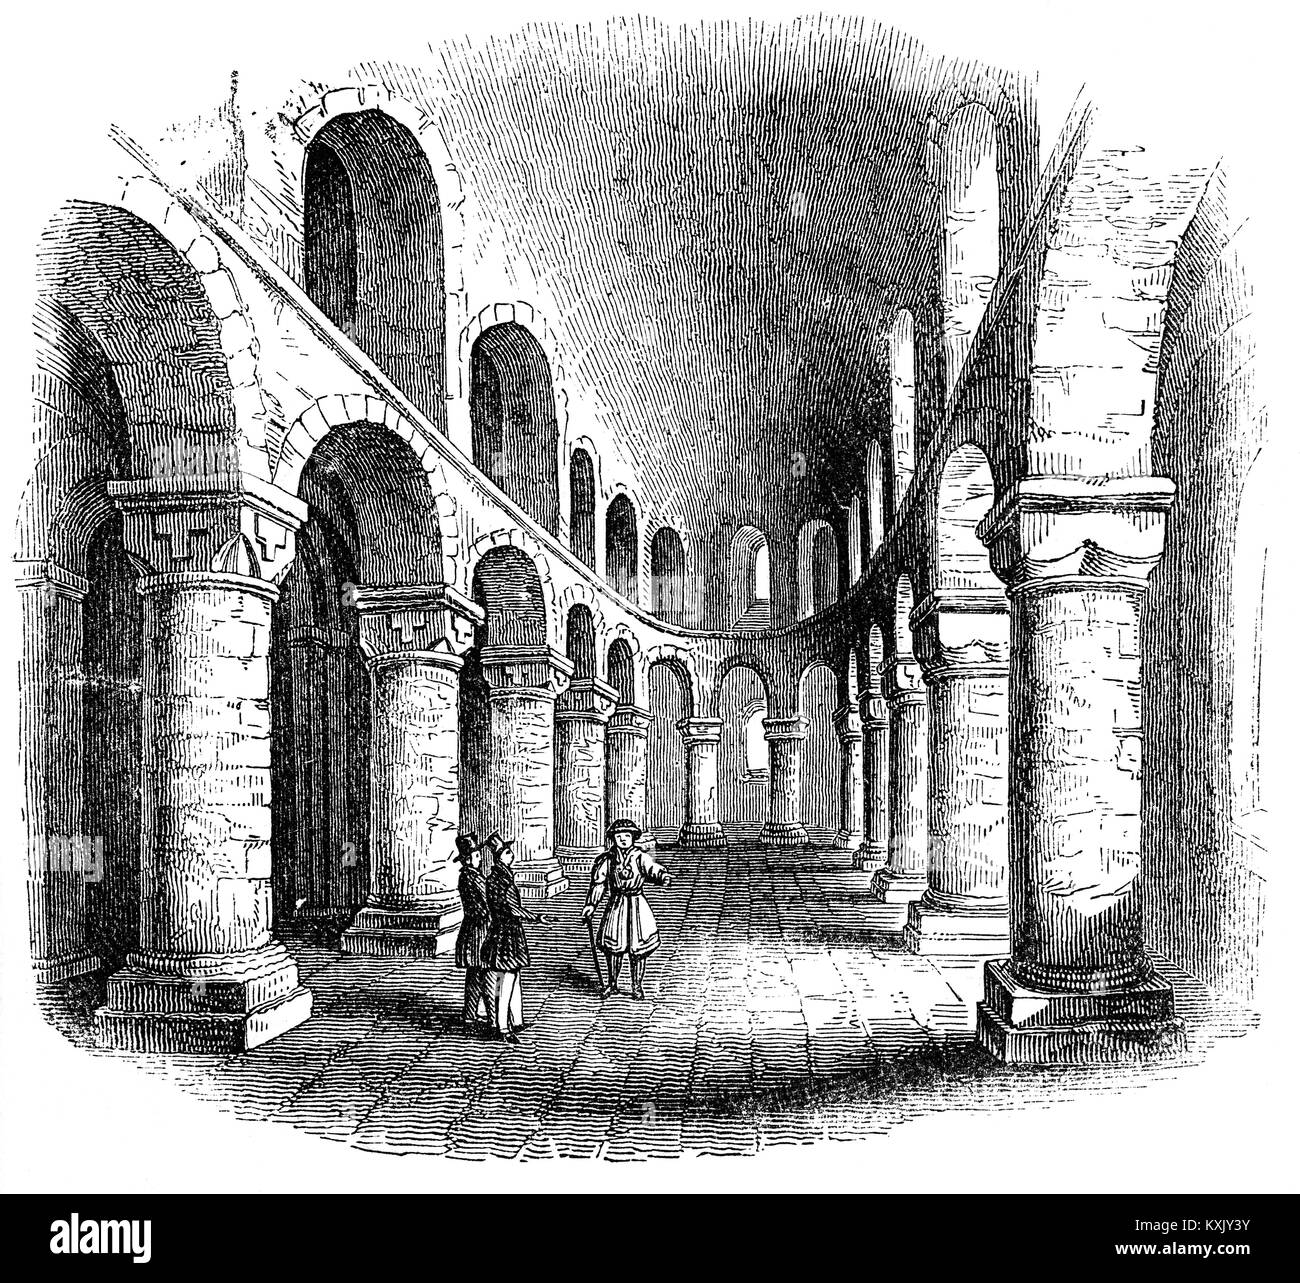 La chapelle romane St John's est au deuxième étage de la Tour Blanche, dans la Tour de Londres. Il a été construit en 1077-97 comme un donjon ou la citadelle, la partie la plus ancienne de Guillaume le Conquérant puissante forteresse. Il a été construit en pierre de la France, et dispose d'une nef voûtée en tunnel avec une abside à l'Est et de l'aine-allées voûtées, et la galerie ci-dessus autour de courbes l'abside. Ronde, épaisse piers soutenir démoulée arches, remarquables par leur simplicité, avec de simples sculptures de pétoncles et les dessins des feuilles fournissant la seule décoration. Banque D'Images